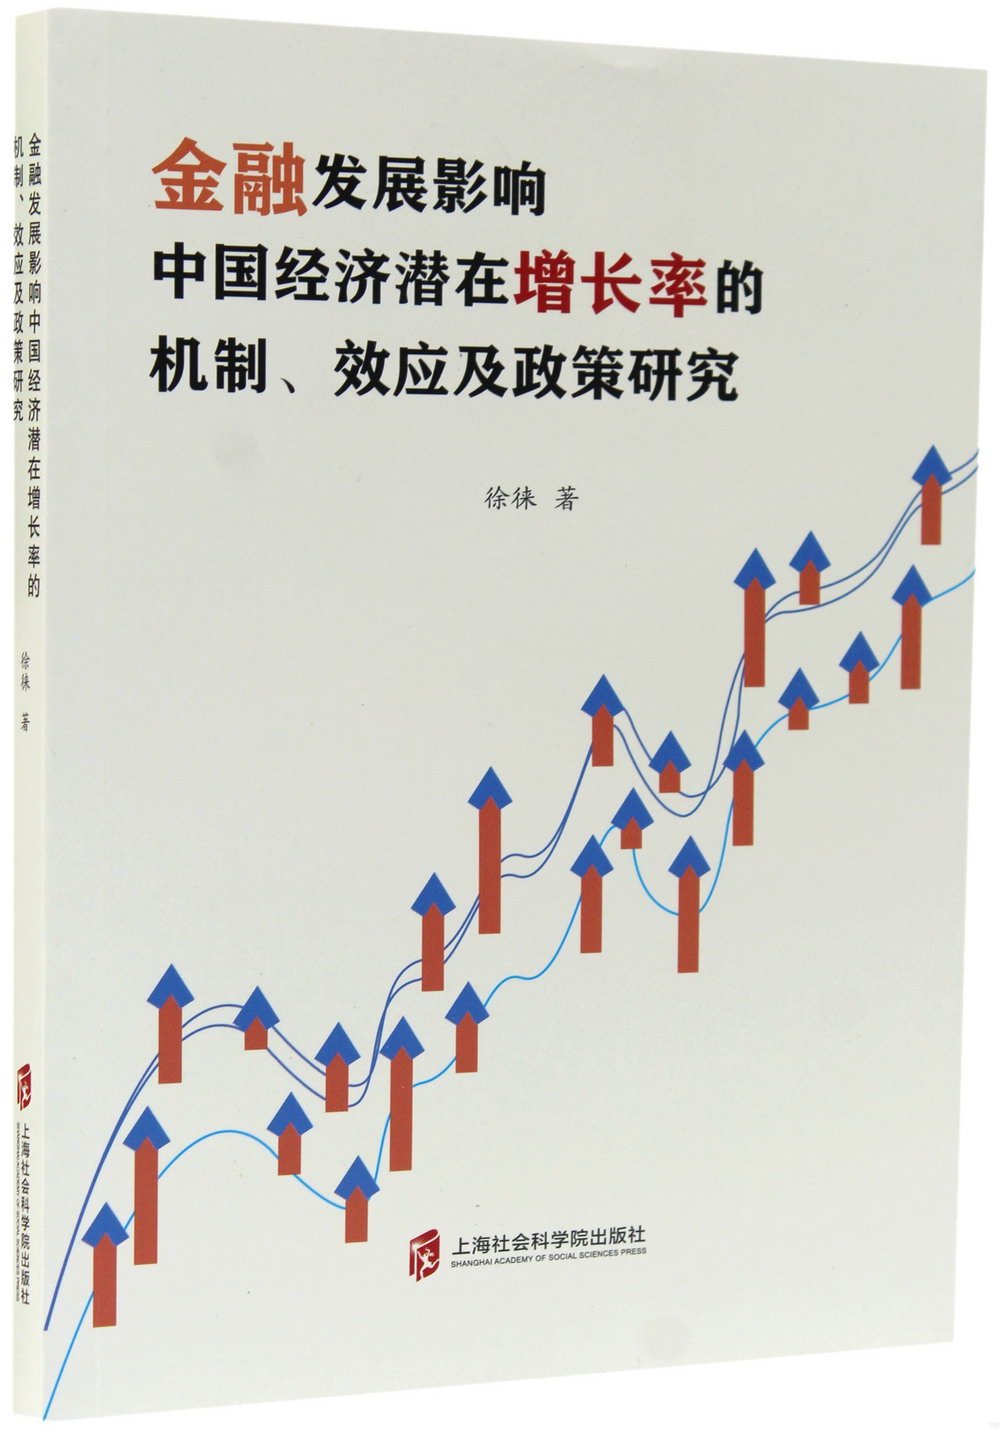 金融發展影響中國經濟潛在增長率的機制、效應及政策研究